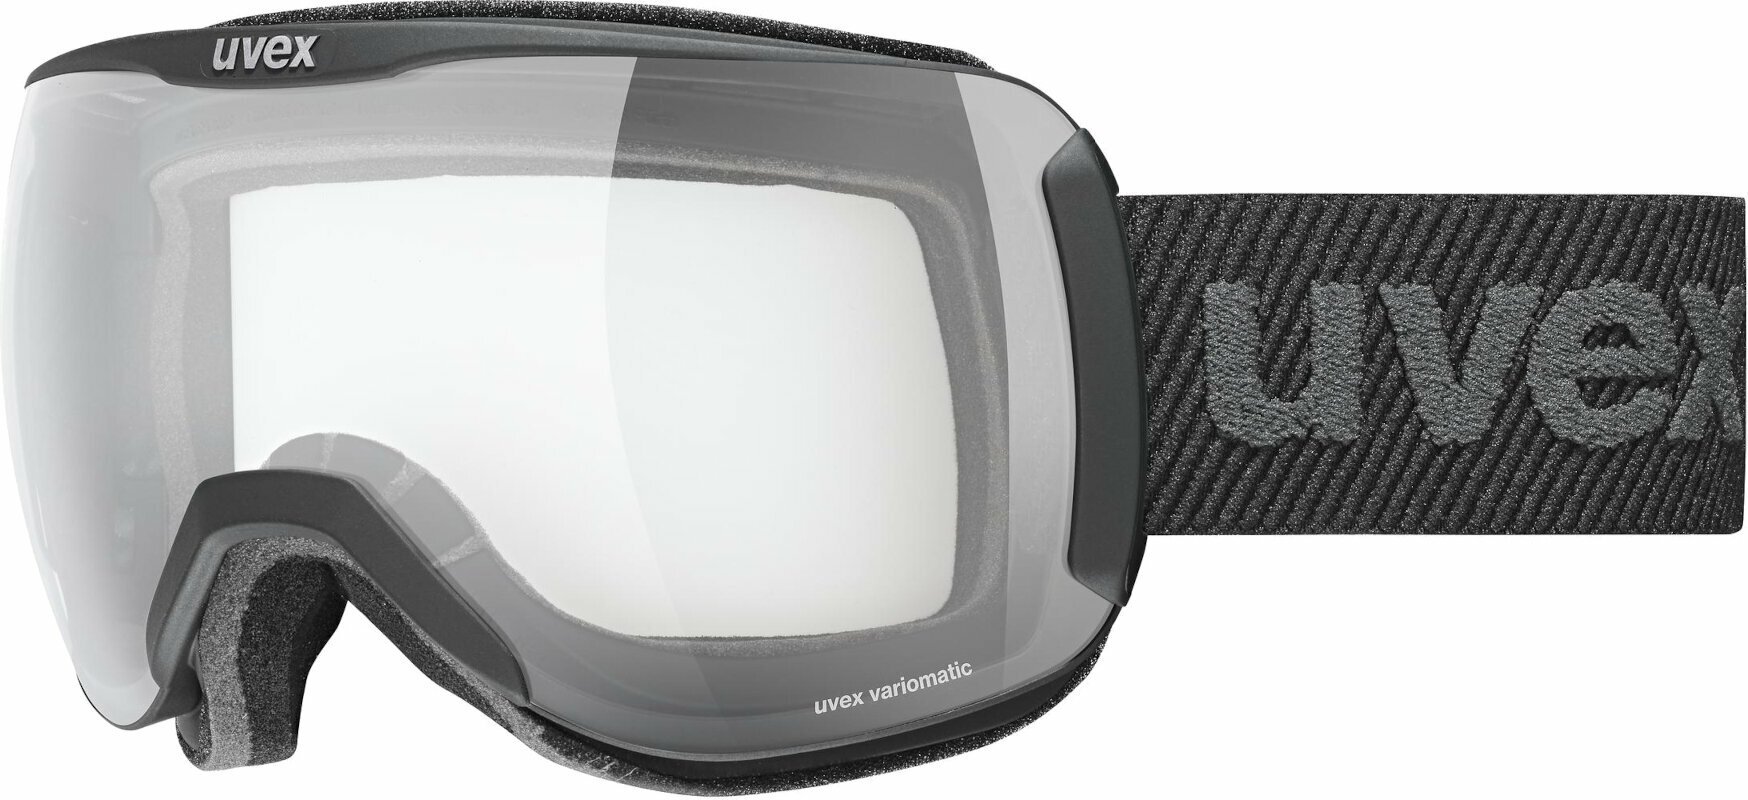 Ski-bril UVEX Downhill 2100 VPX Black Mat/Variomatic Polavision Ski-bril